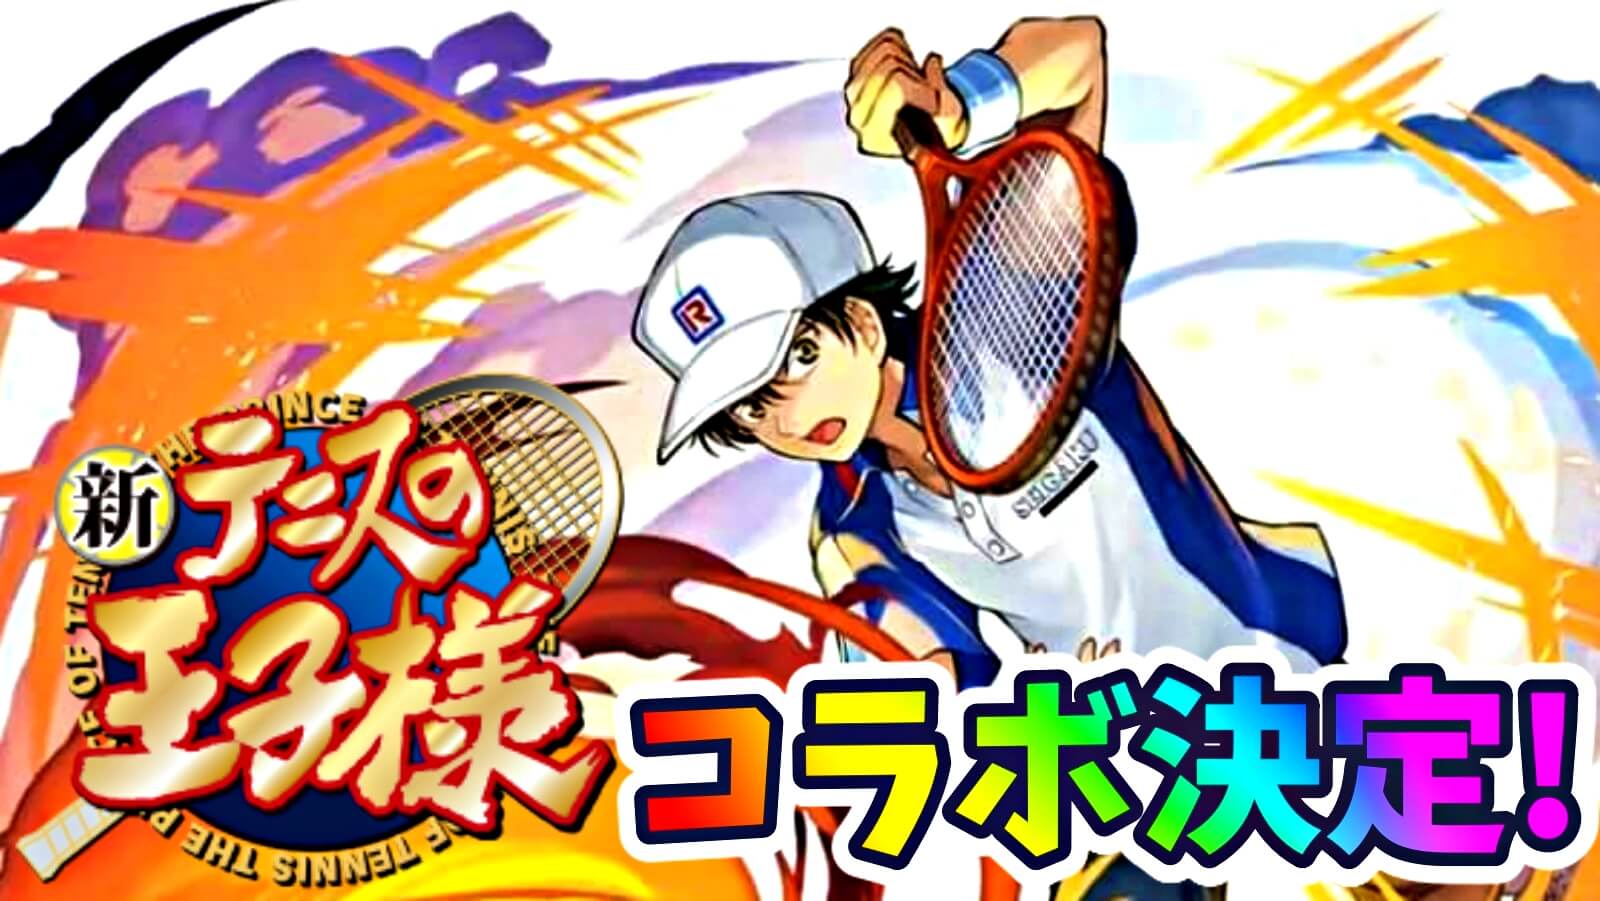 【パズドラ】『新テニスの王子様』コラボ決定! 公開されたイラストまとめ!